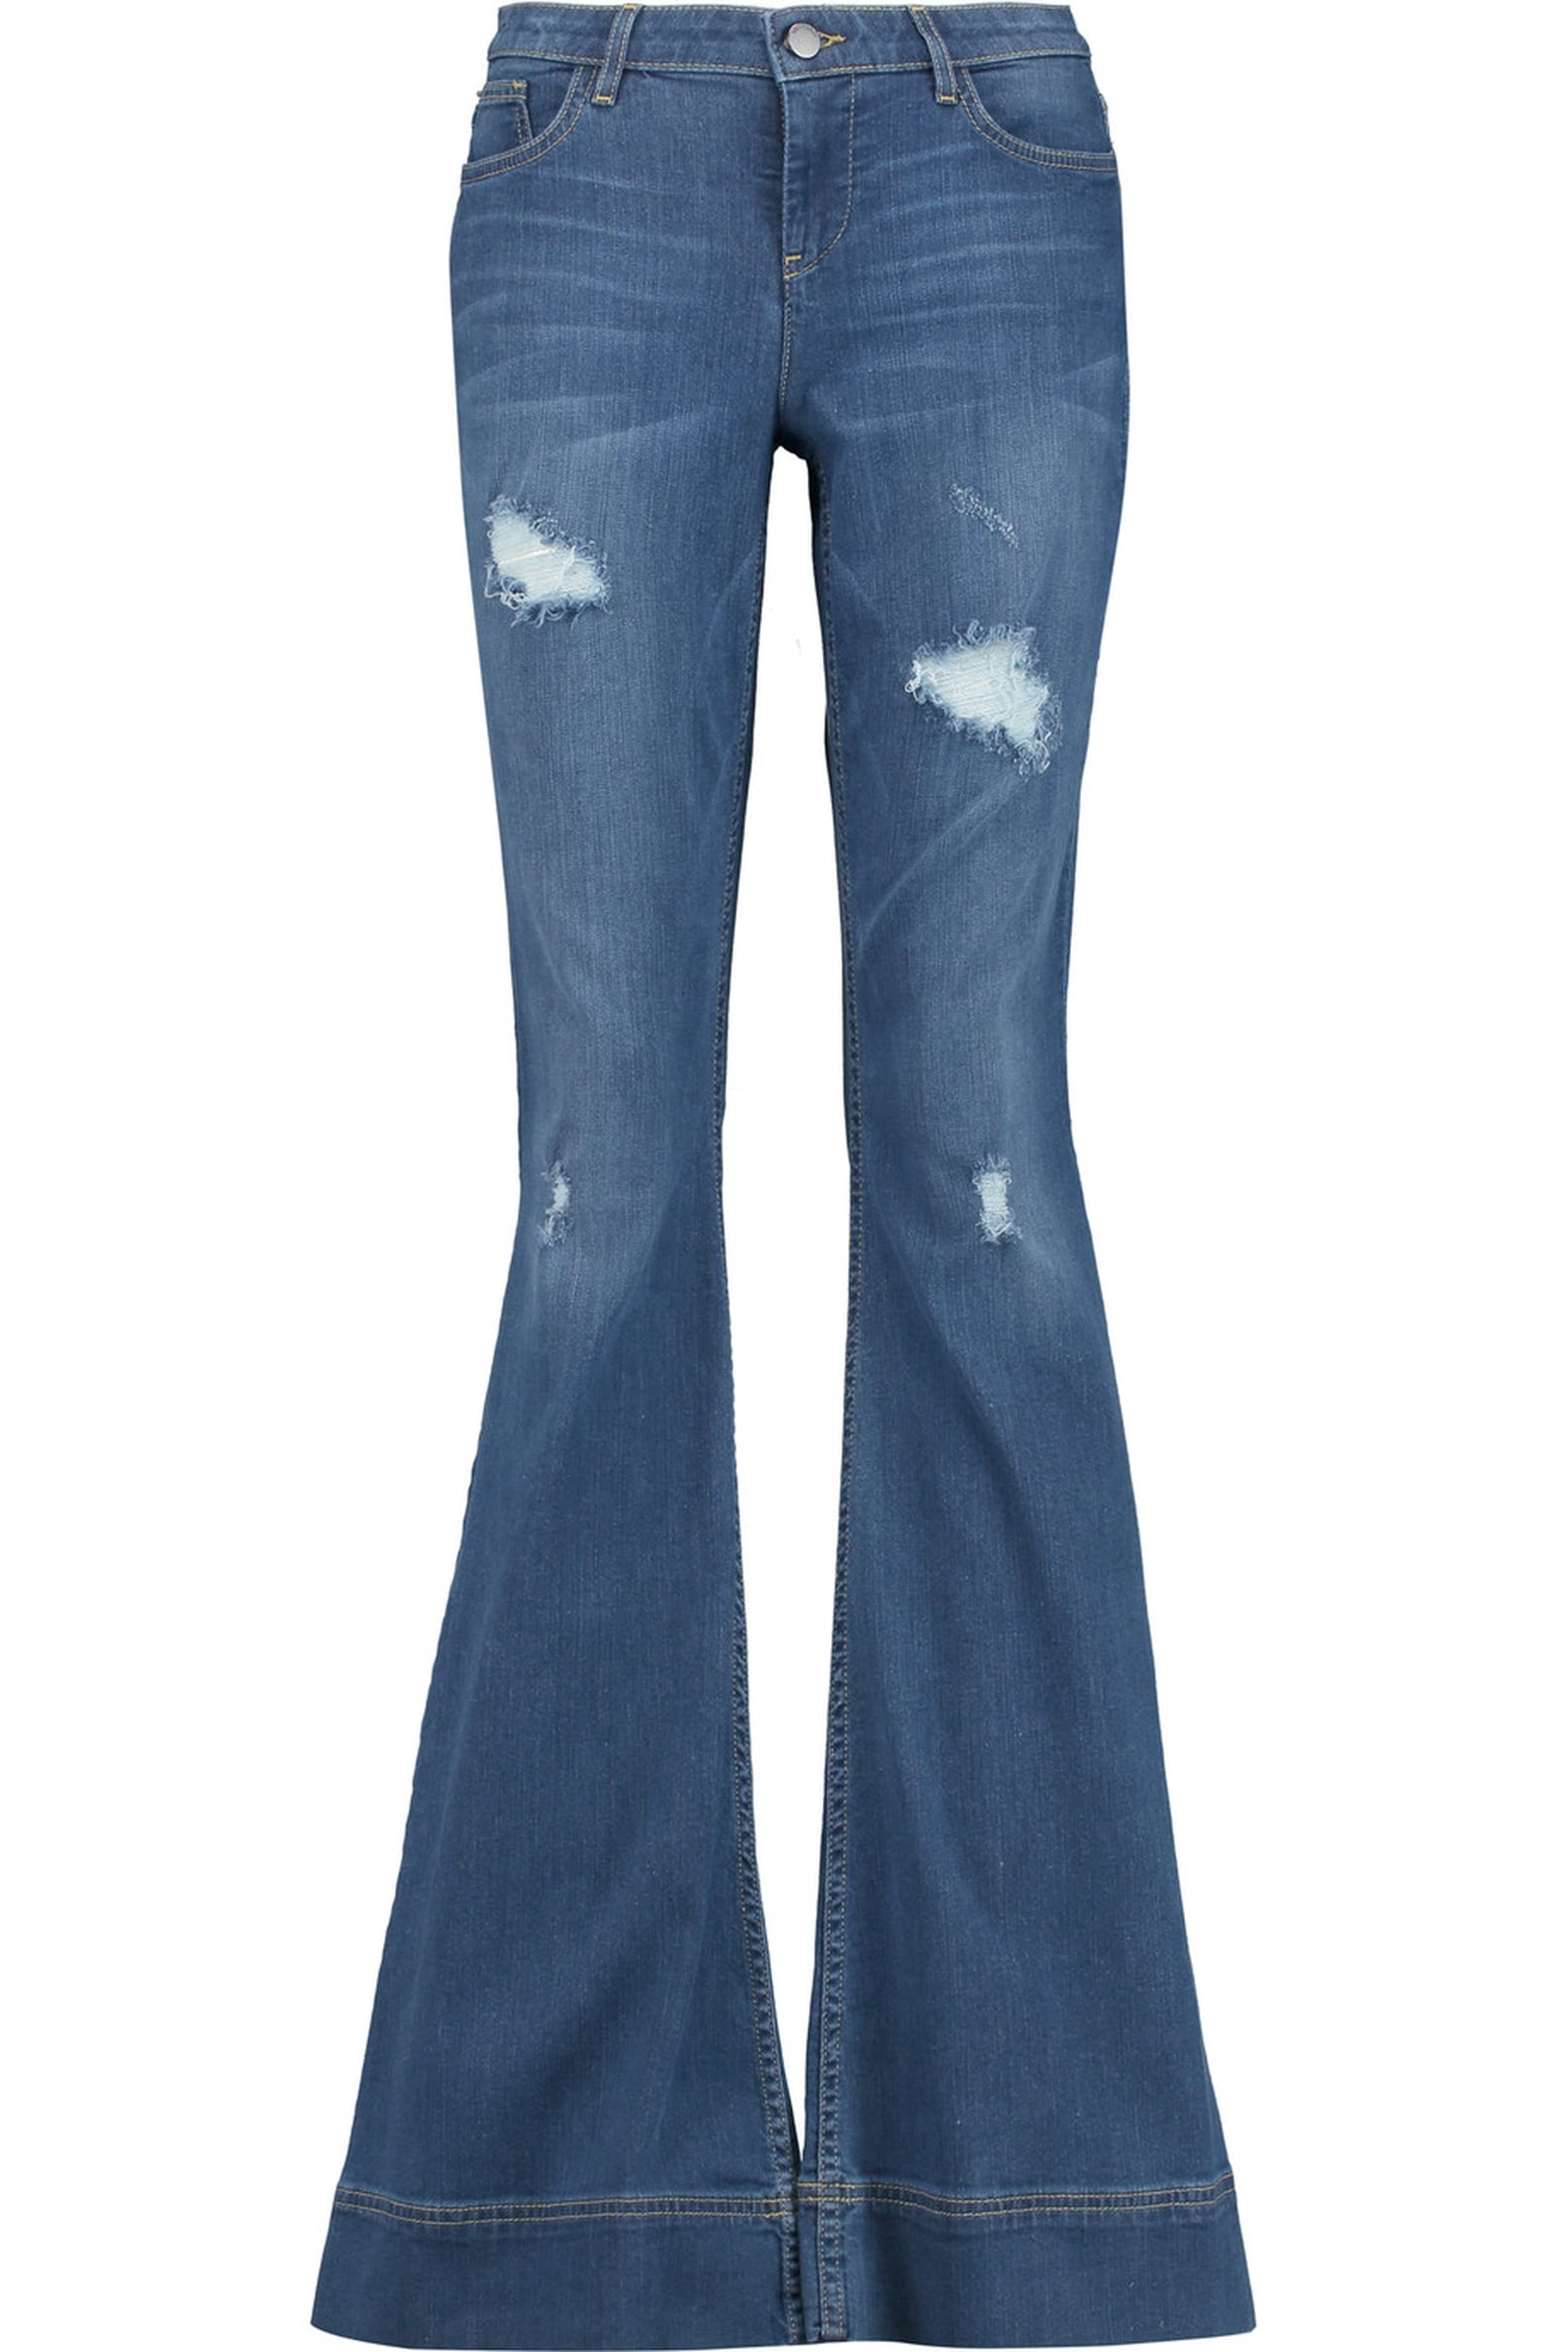 Victoria Beckham Flare Jeans at Fashion Week | POPSUGAR Fashion